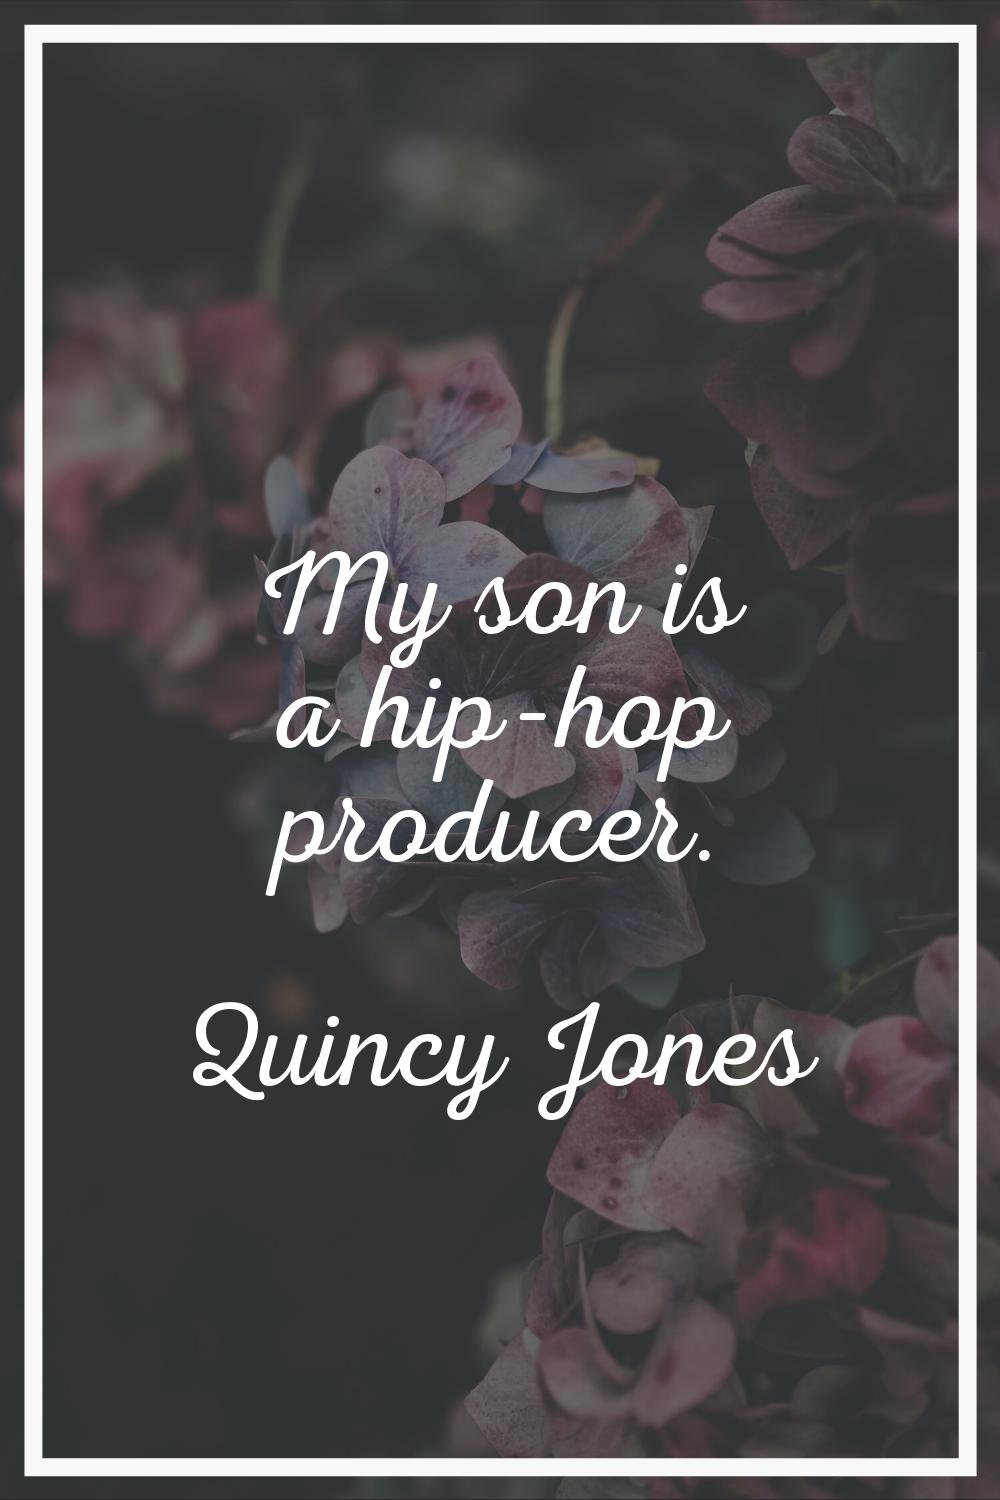 My son is a hip-hop producer.